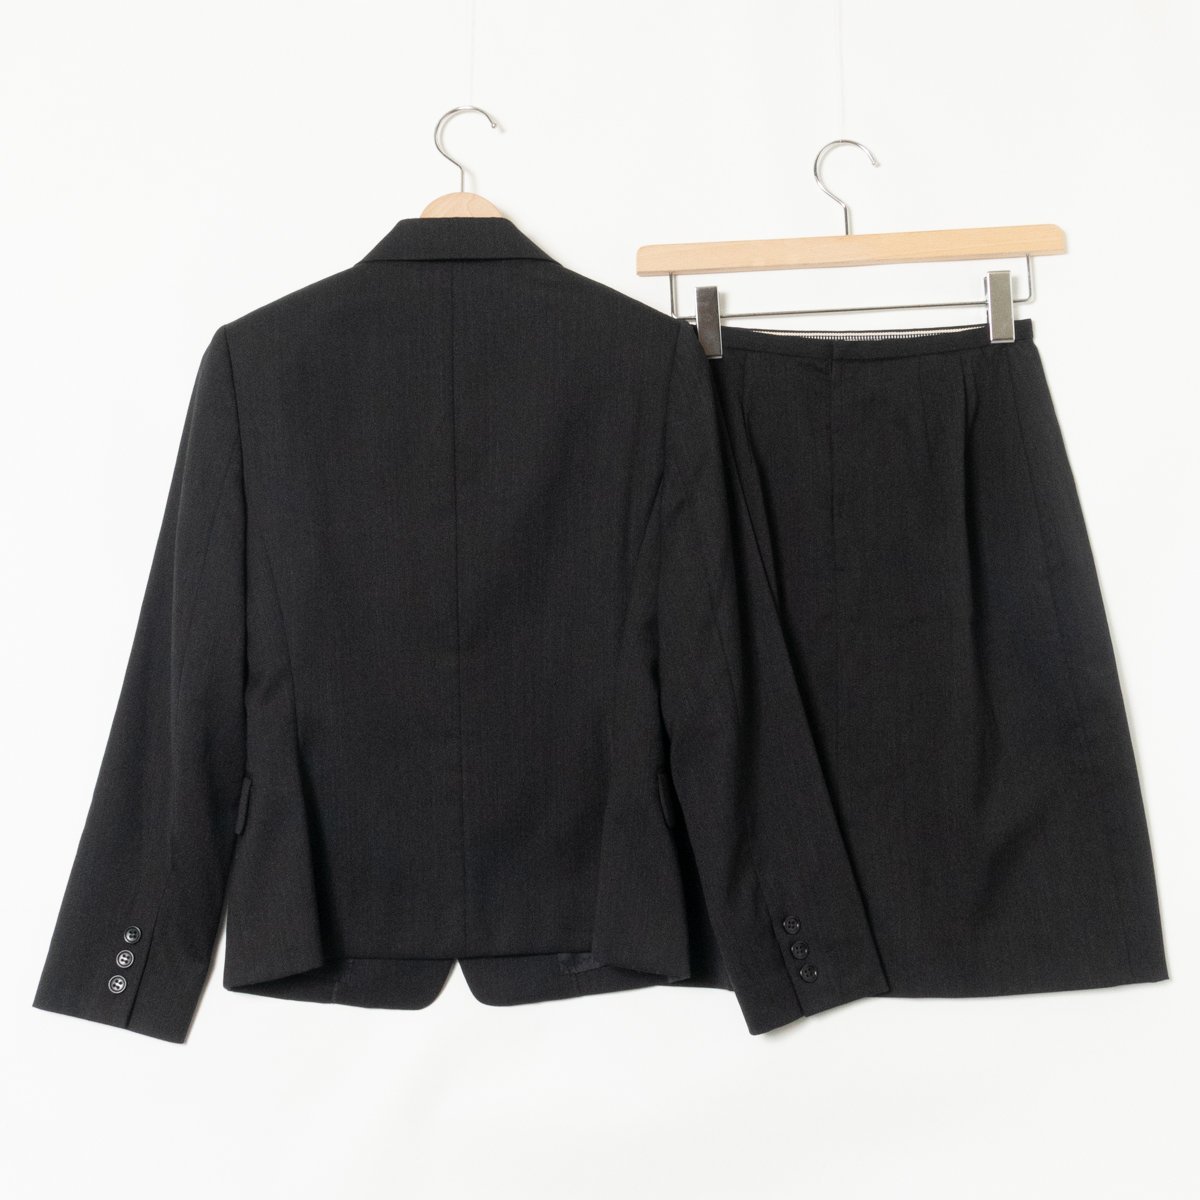 Aylesbury юбка костюм Aylesbury серый черный простой офис красивый . Basic шерсть 78% шерсть 7/7 женский сделано в Японии 